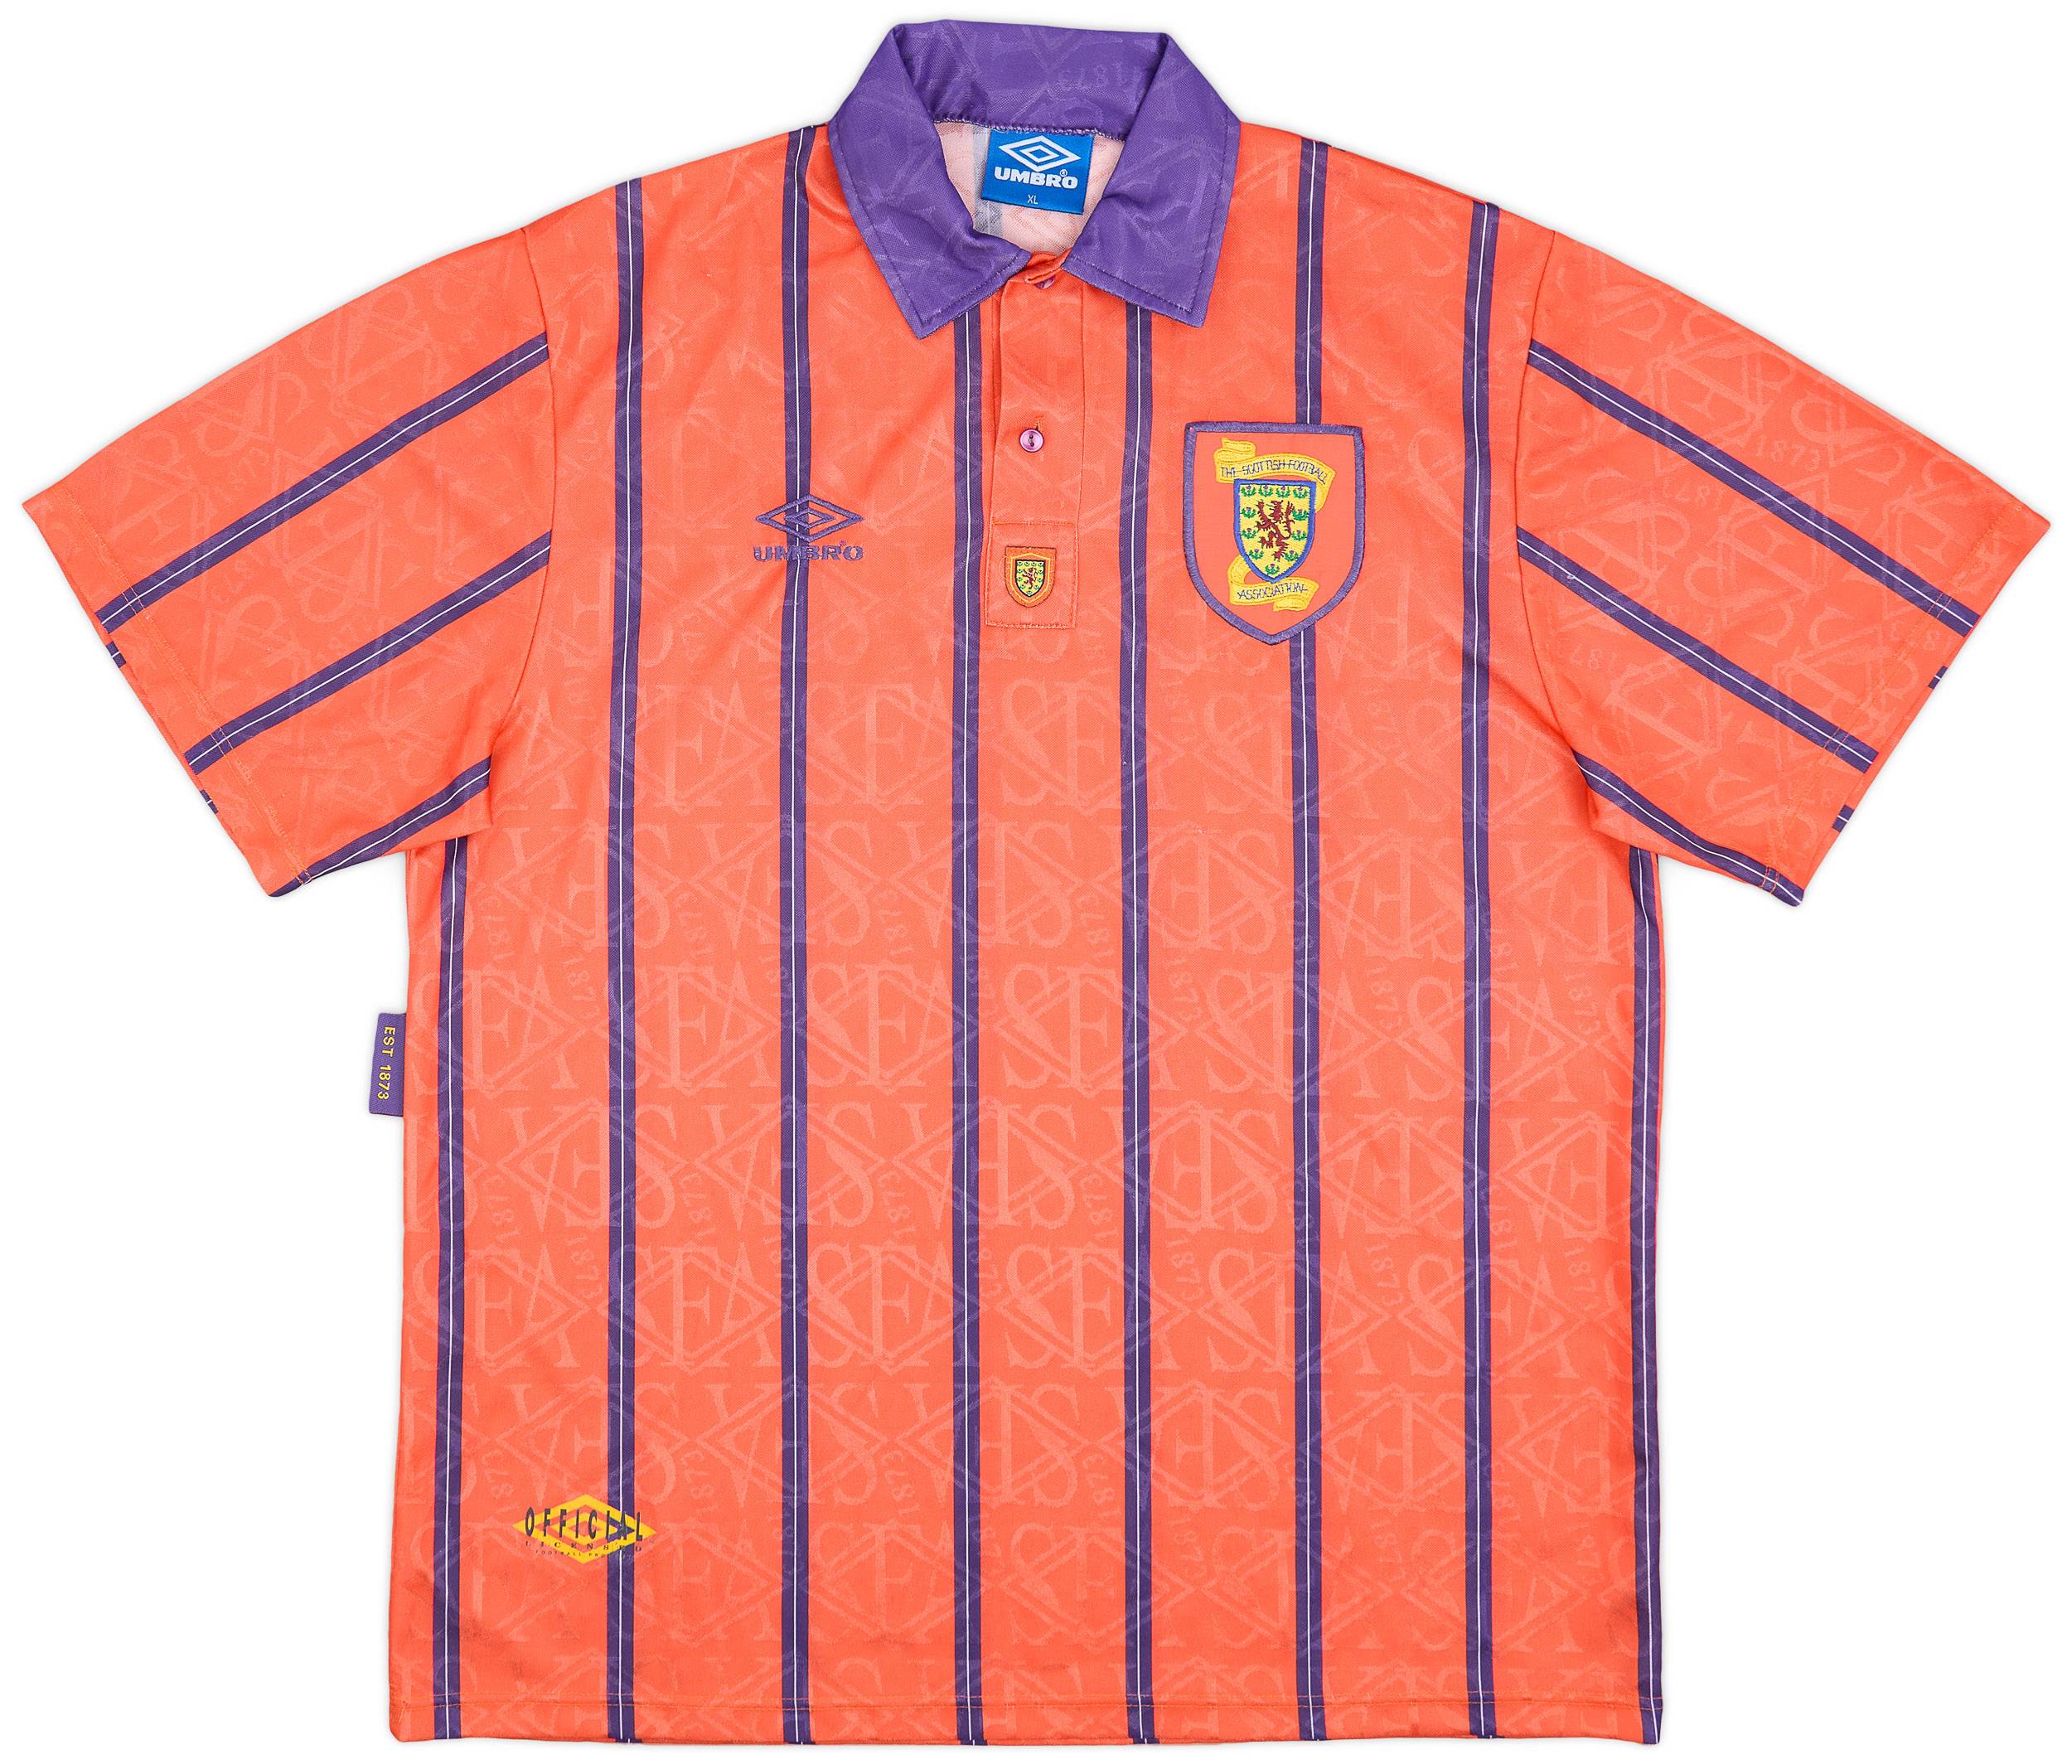 1993-95 Scotland Away Shirt - 8/10 - (XL)